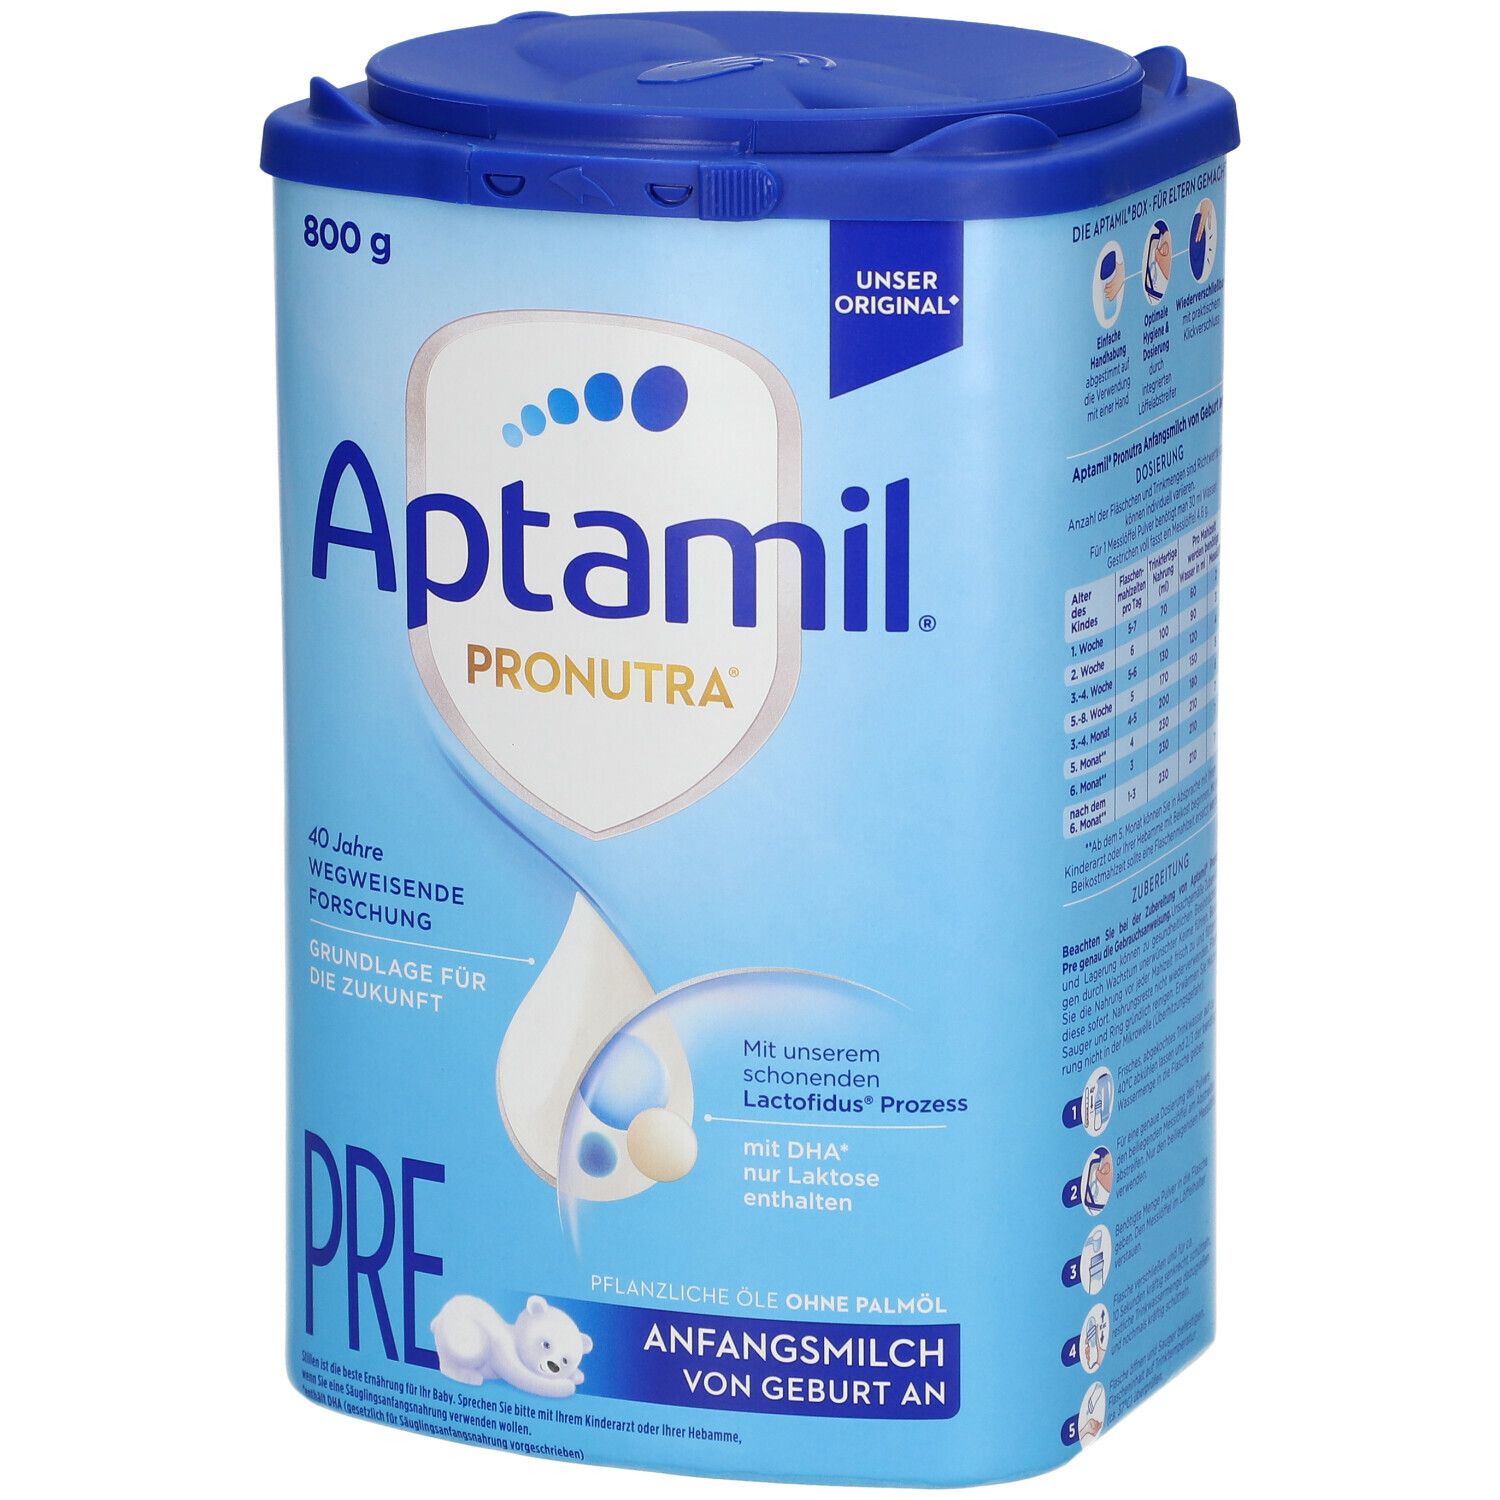 Aptamil® Pronutra Pre Anfangsmilch von Geburt an